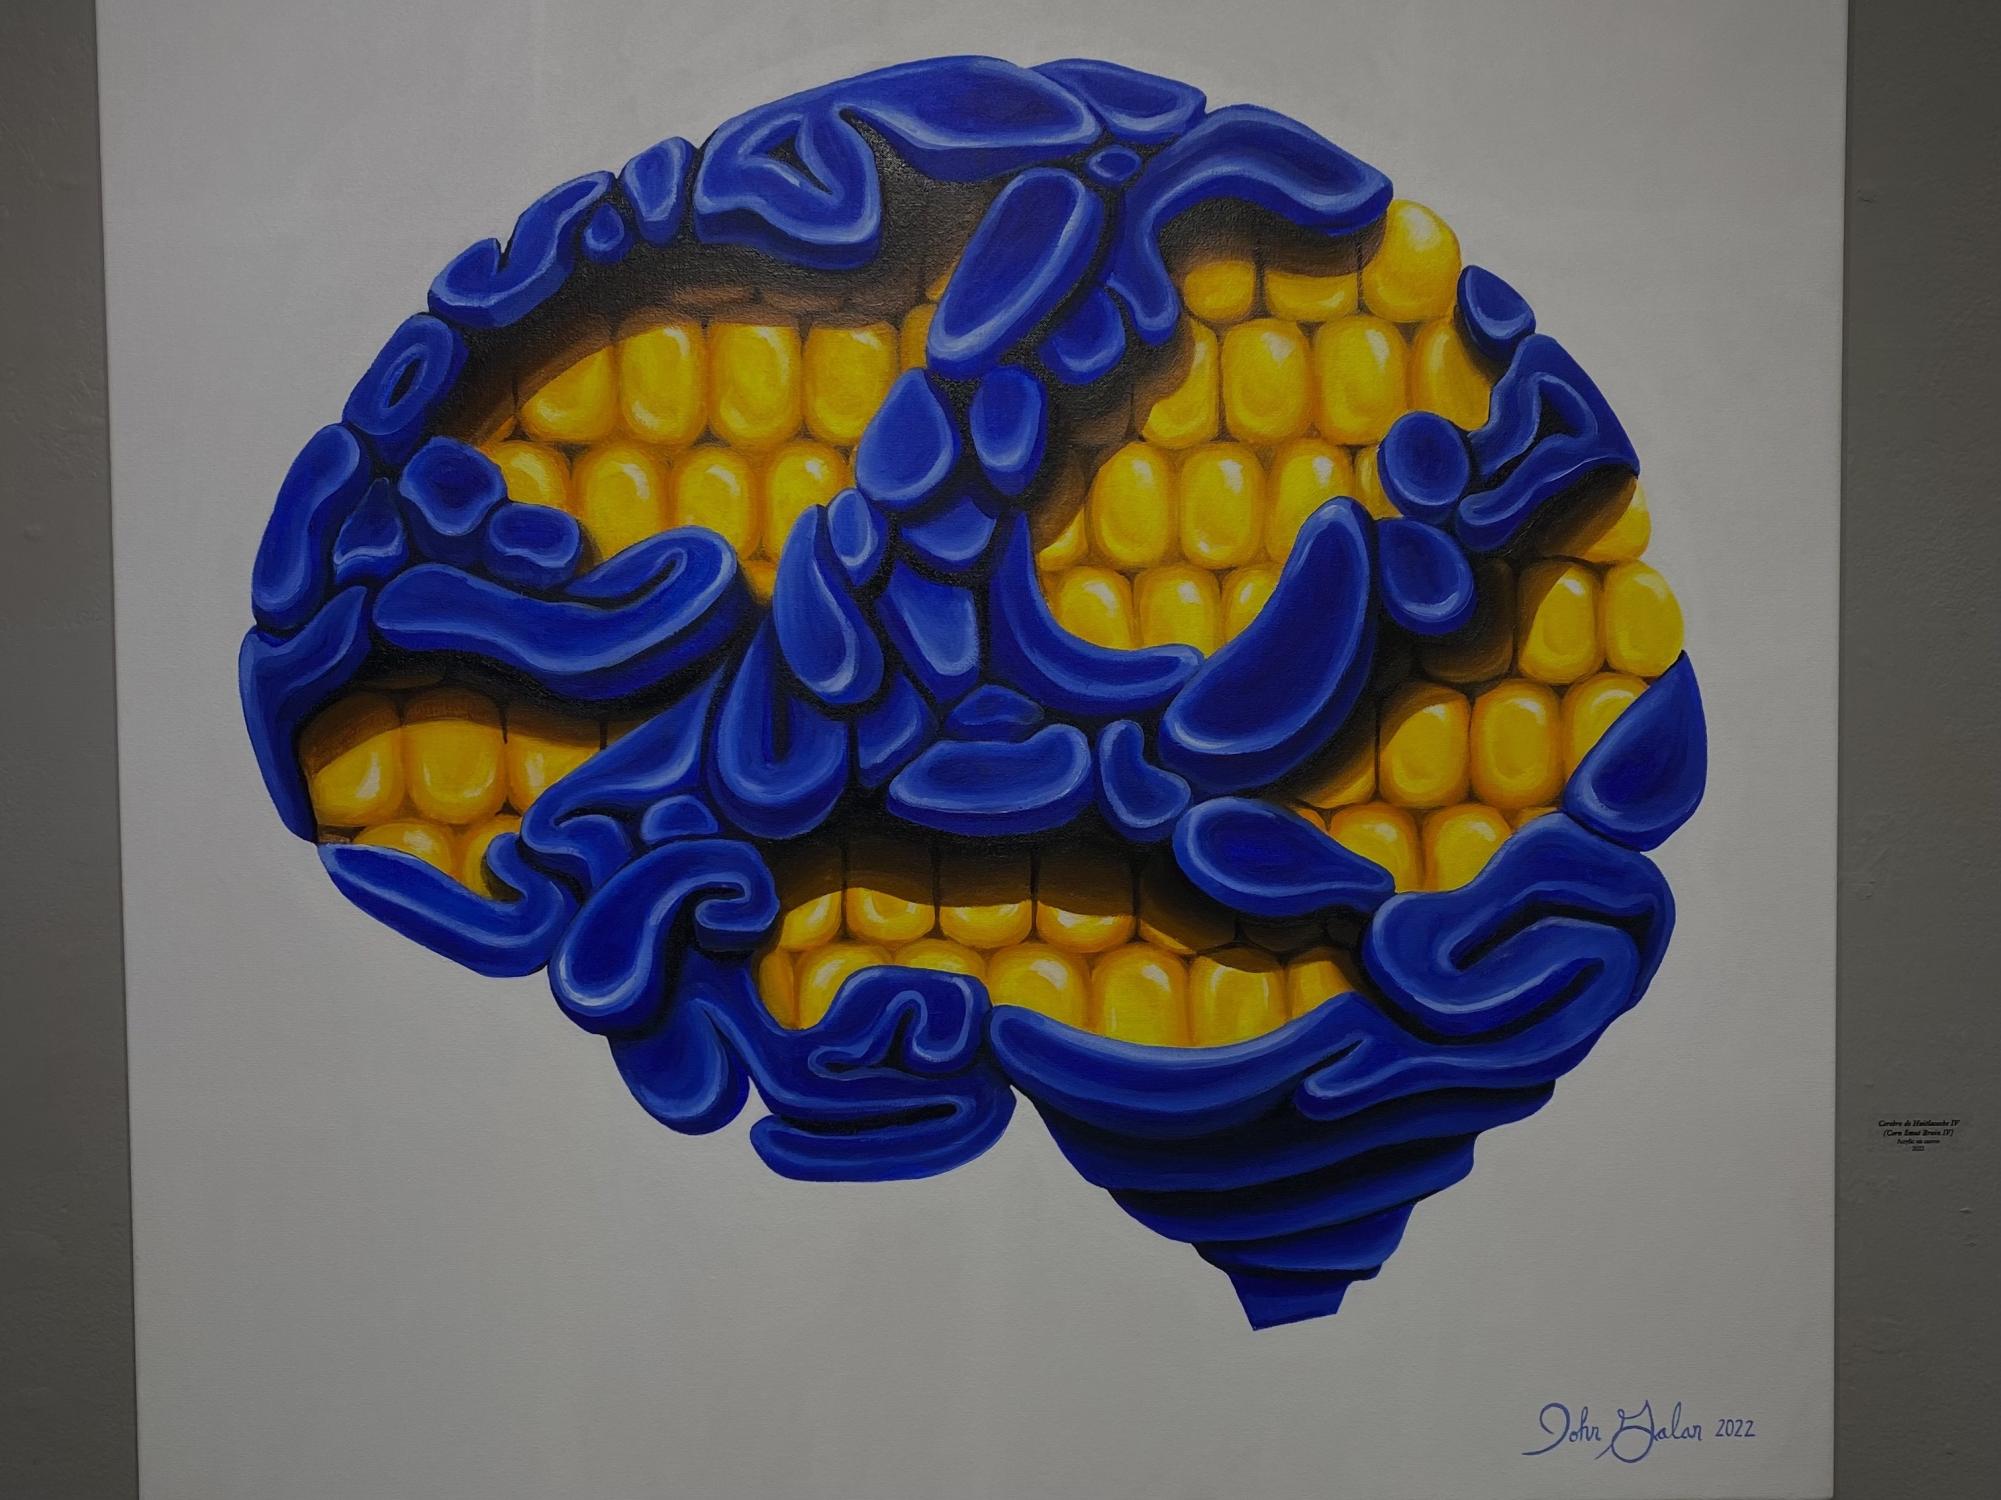 An art piece of the "Organ Series” called "Cerebro de Huitlacoche IV" by John Galan.